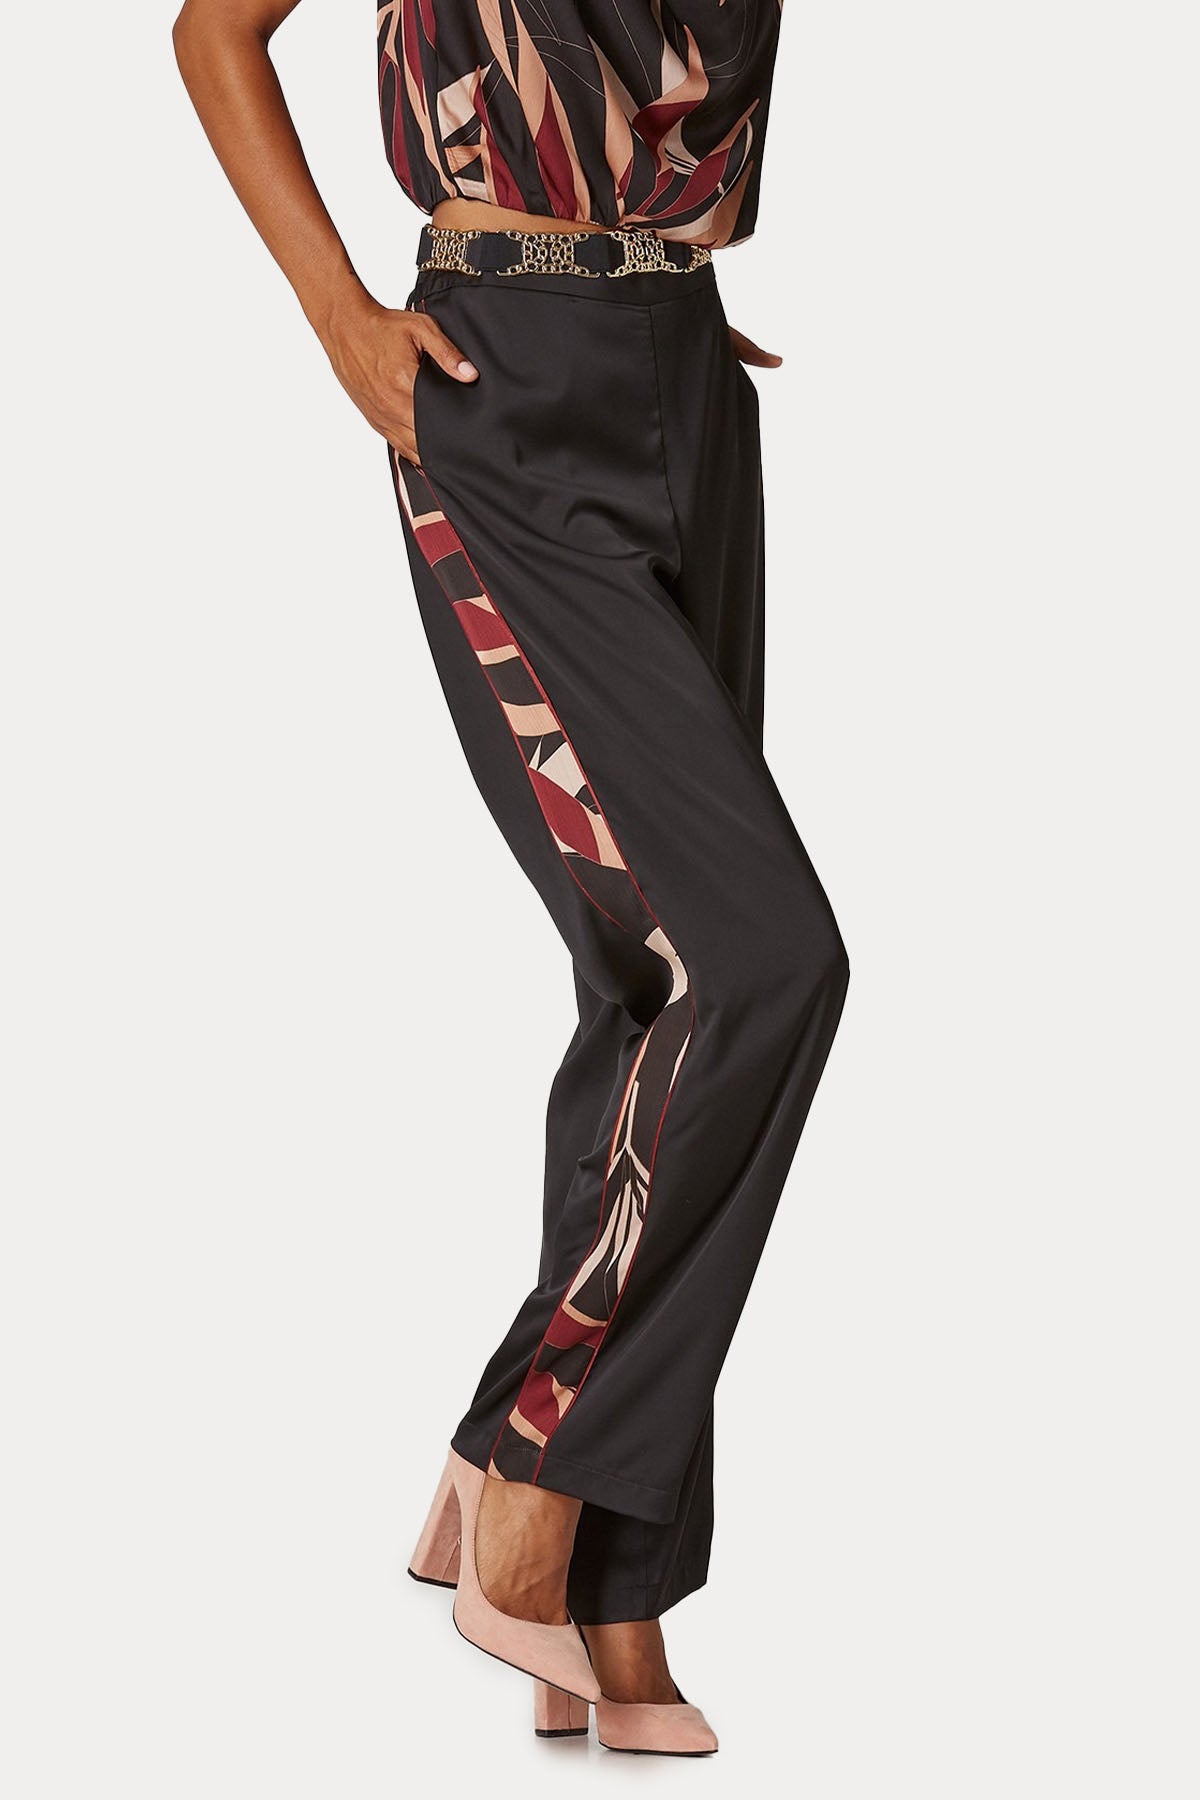 Lynne Comfort Fit Desenli Şeritli Yüksek Bel Pantolon-Libas Trendy Fashion Store